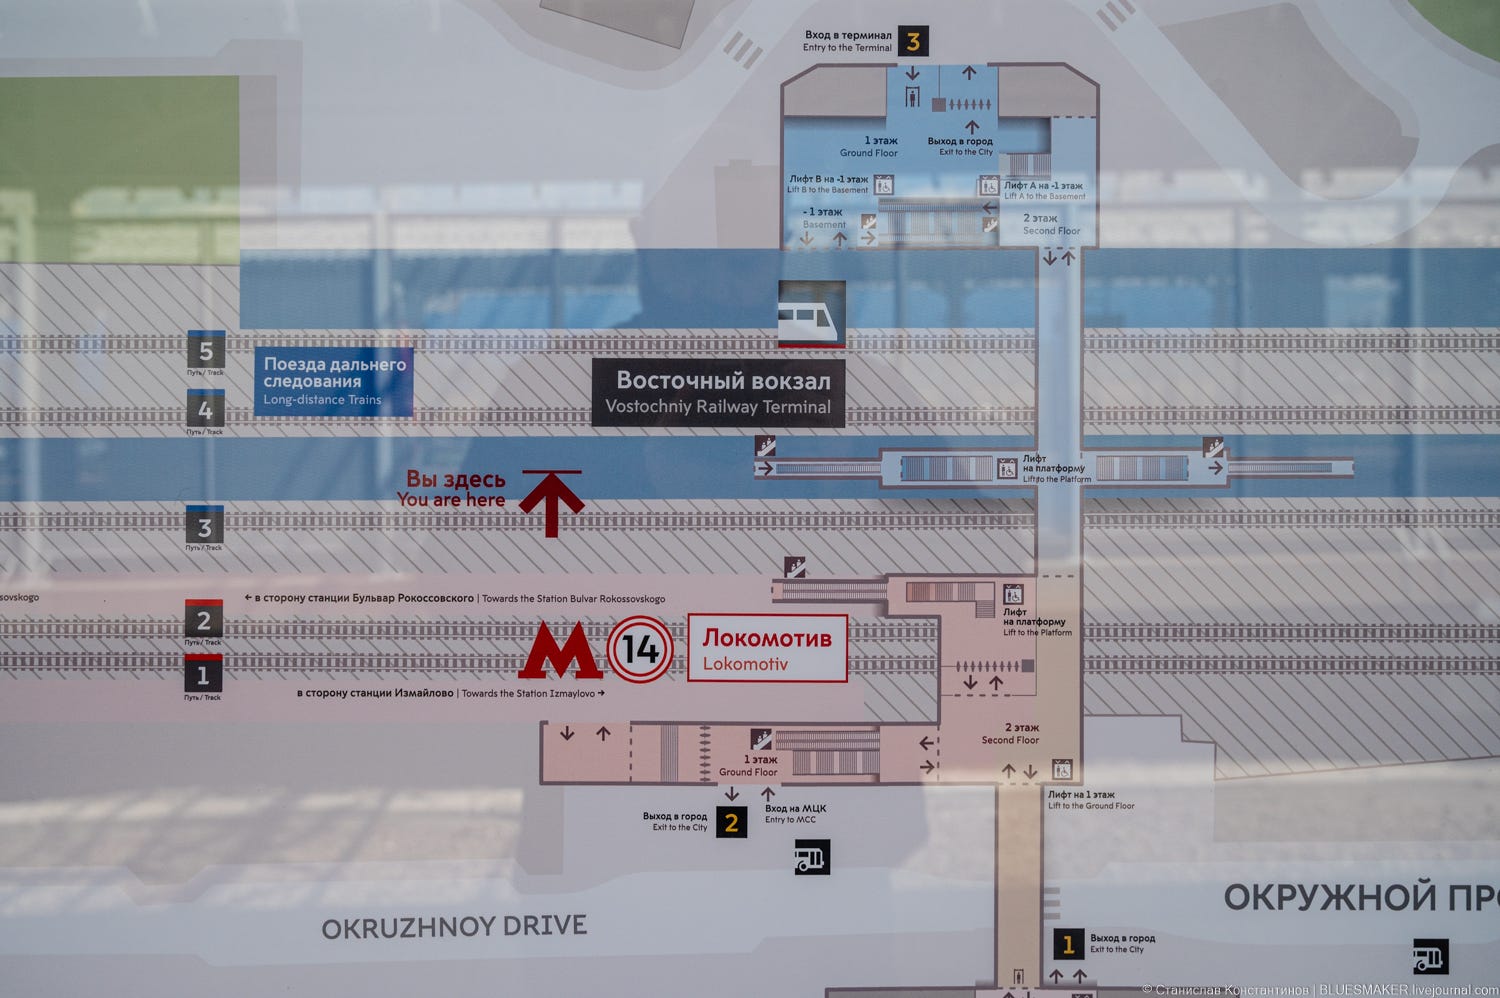 Вокзал восточный москва где находится на карте. ТПУ Черкизово вокзал Восточный. Схема восточного вокзала в Москве. Схема восточного вокзала в Москве с путями. Вокзал Восточный Москва план вокзала.